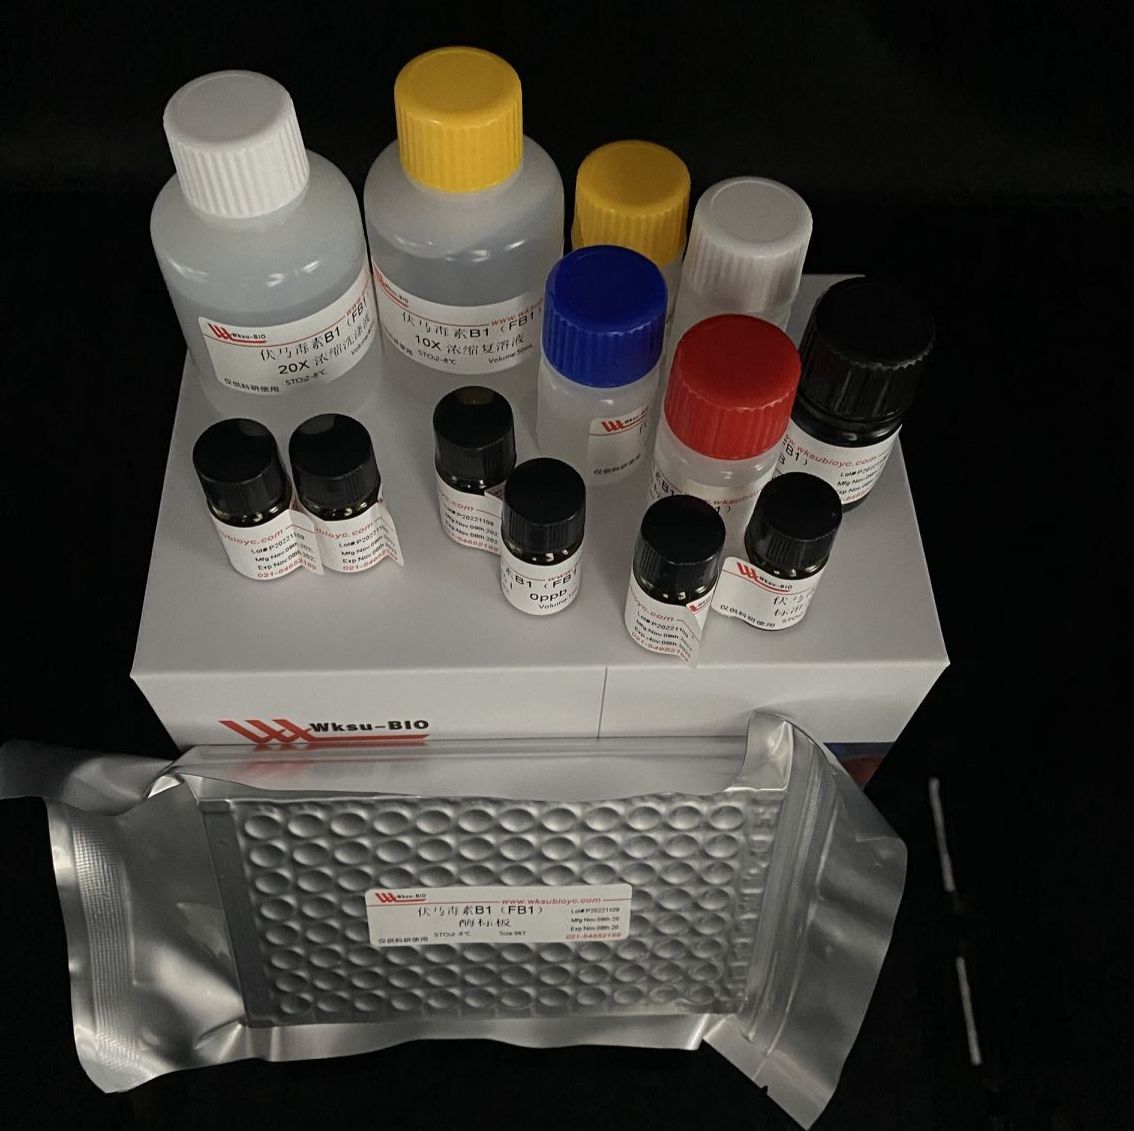 糜蛋白酶试剂盒/胰凝乳蛋白酶试剂盒,微板法